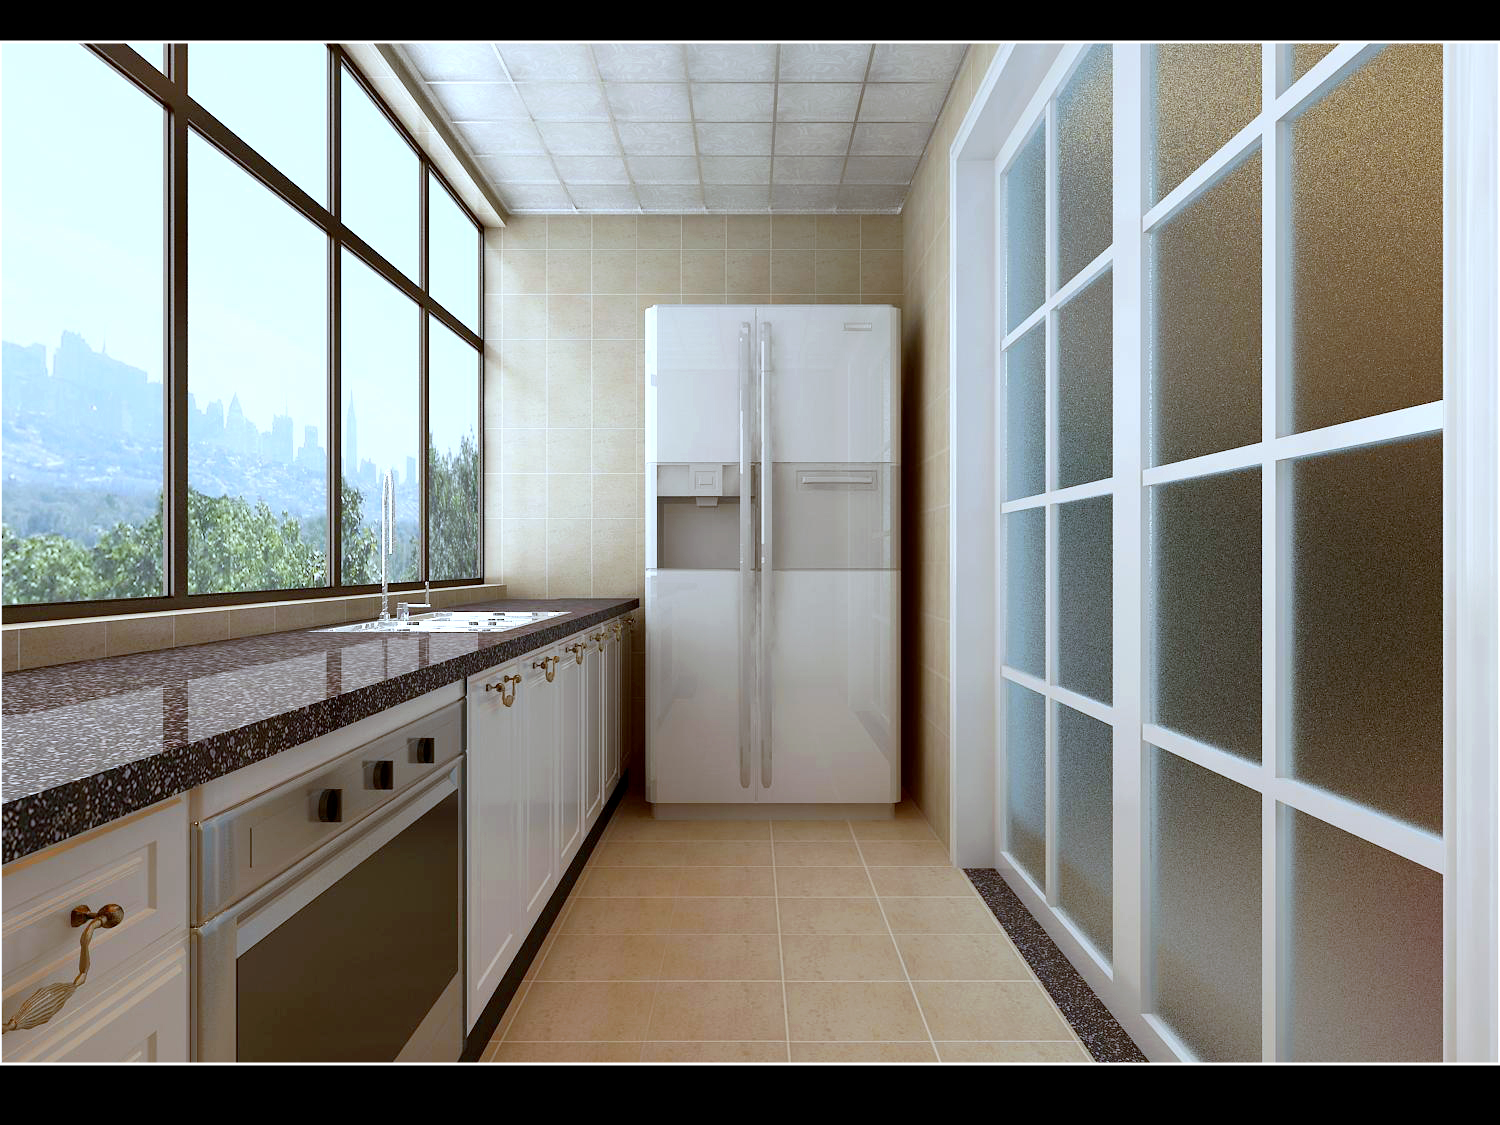 简约 二居 峰光无限 厨房图片来自西安峰光无限装饰在群贤道九号二居95㎡现代简约风格的分享